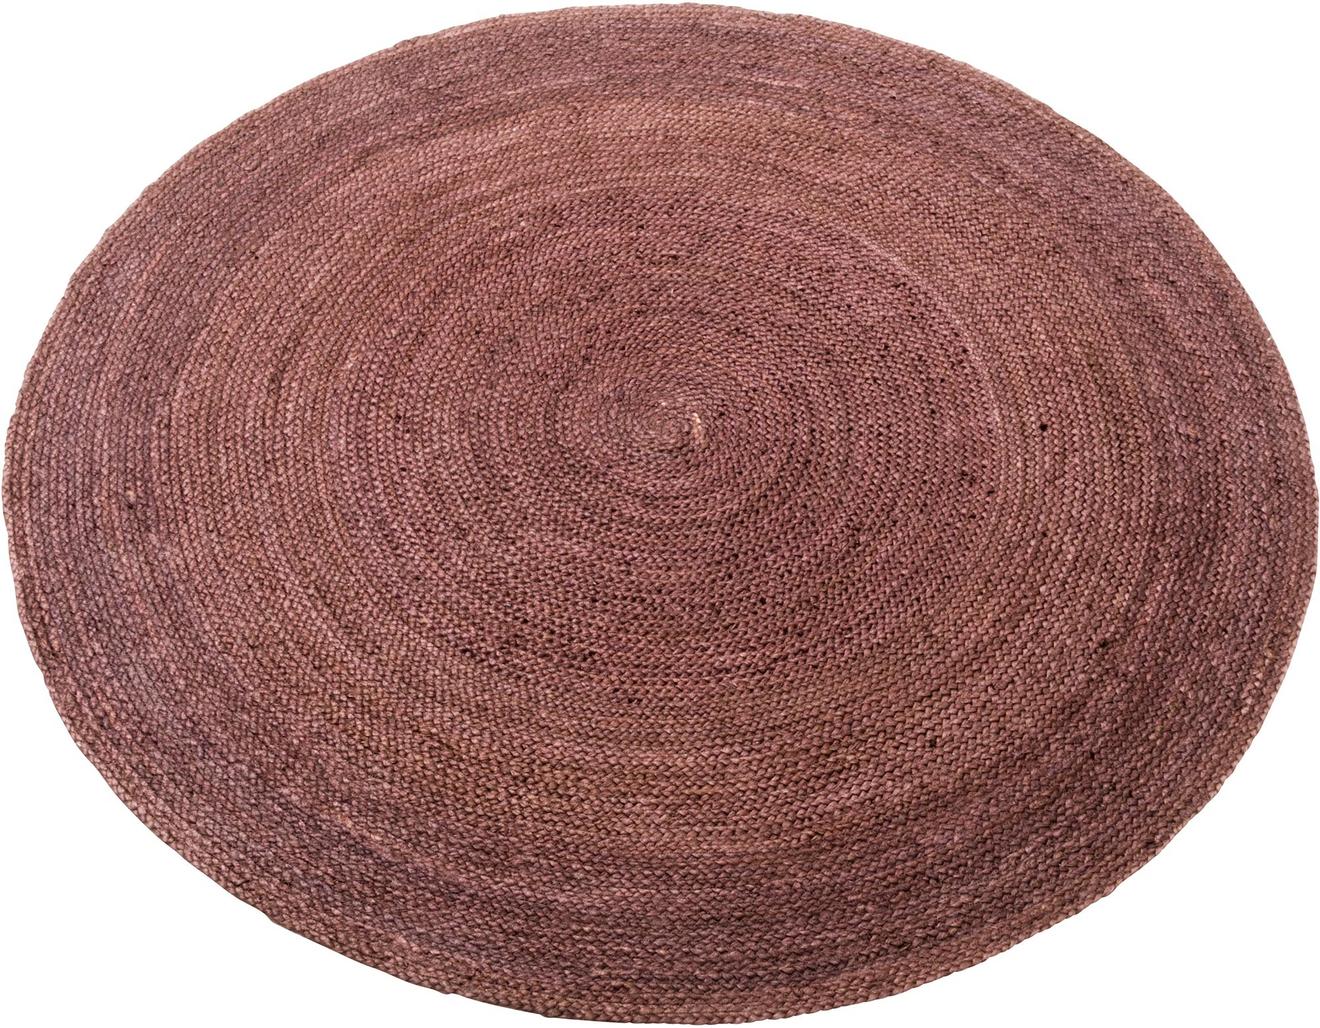 Kallio juuttimatto pyöreä ⌀ 200 cm, ruskea tuote hintaan 99€ liikkeestä MASKU